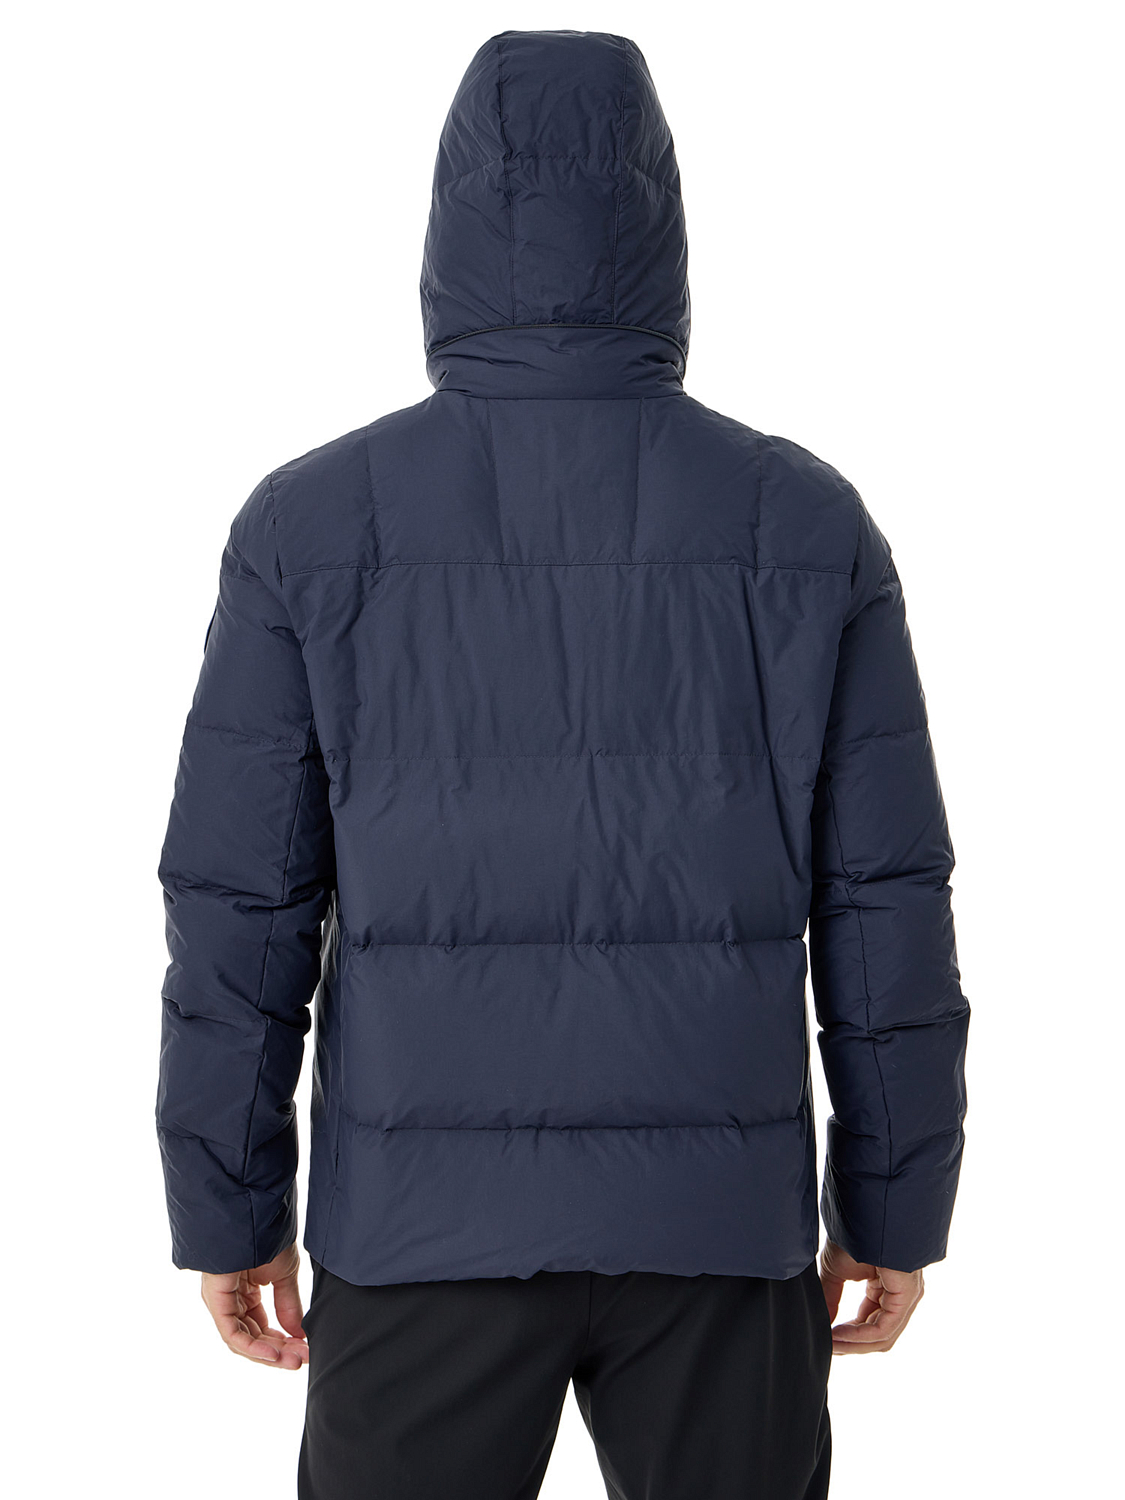 Куртка Dolomite Jacket M's Fitzroy Wood Blue